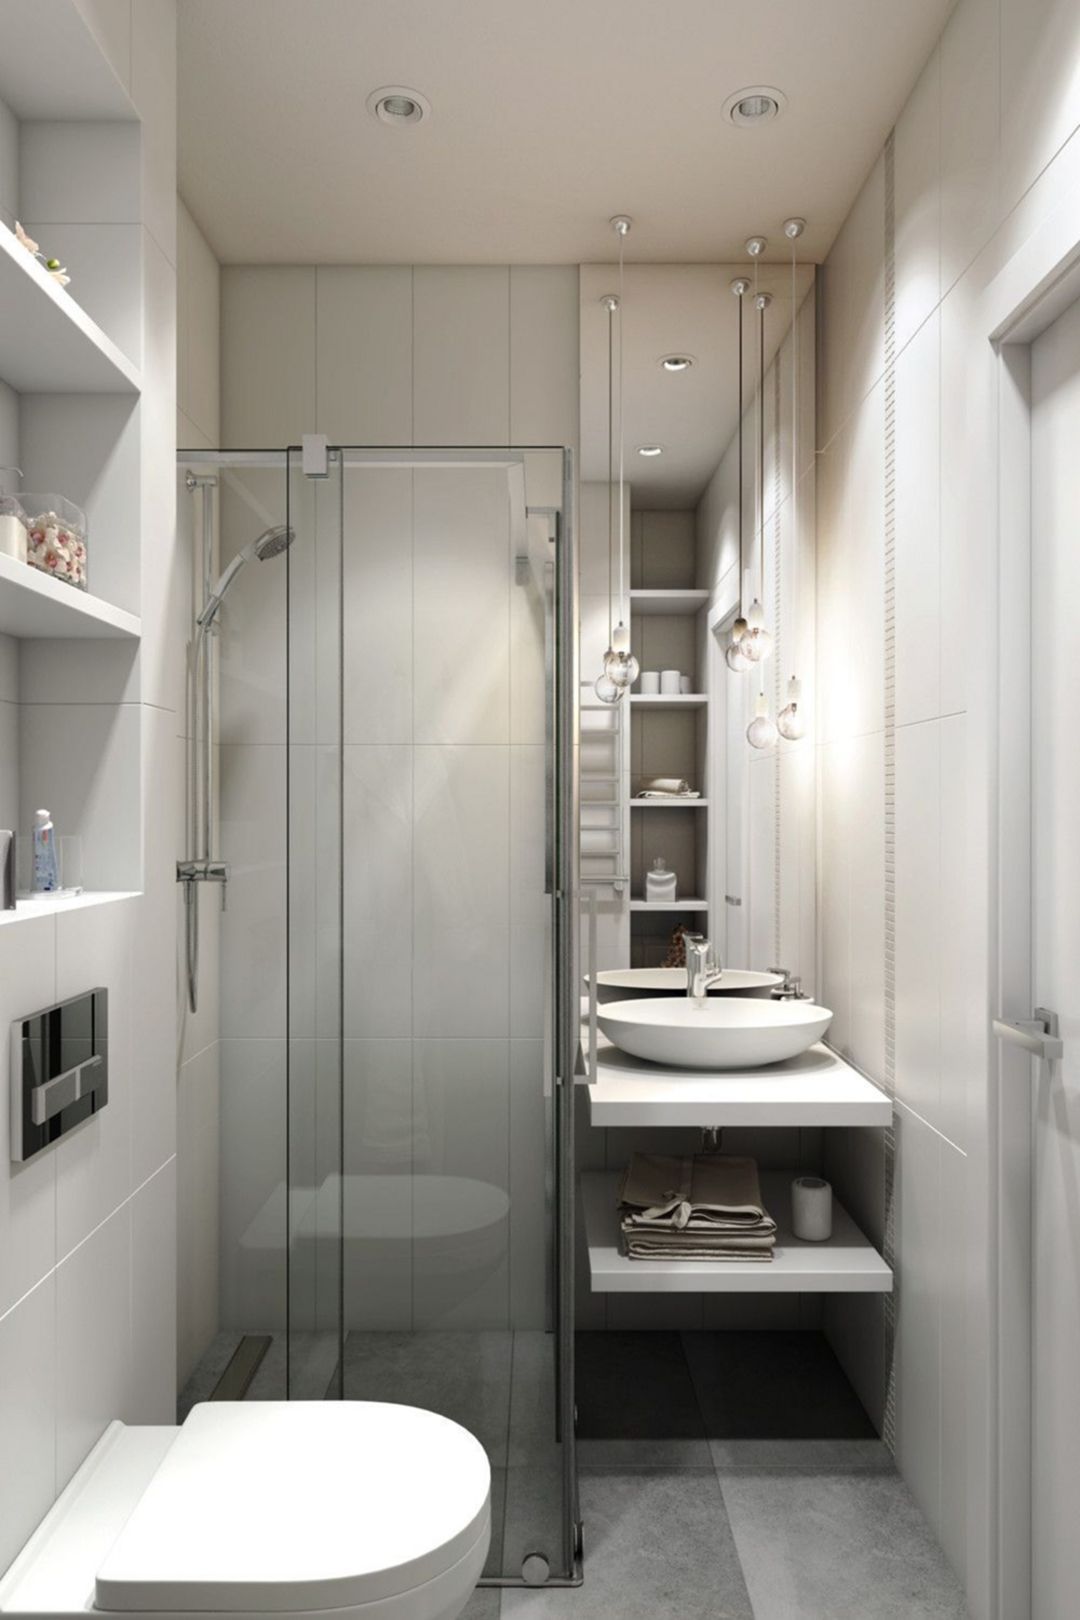 Phòng tắm 4m2 có hệ thống lưu trữ thông minh và vô cùng tiện ích